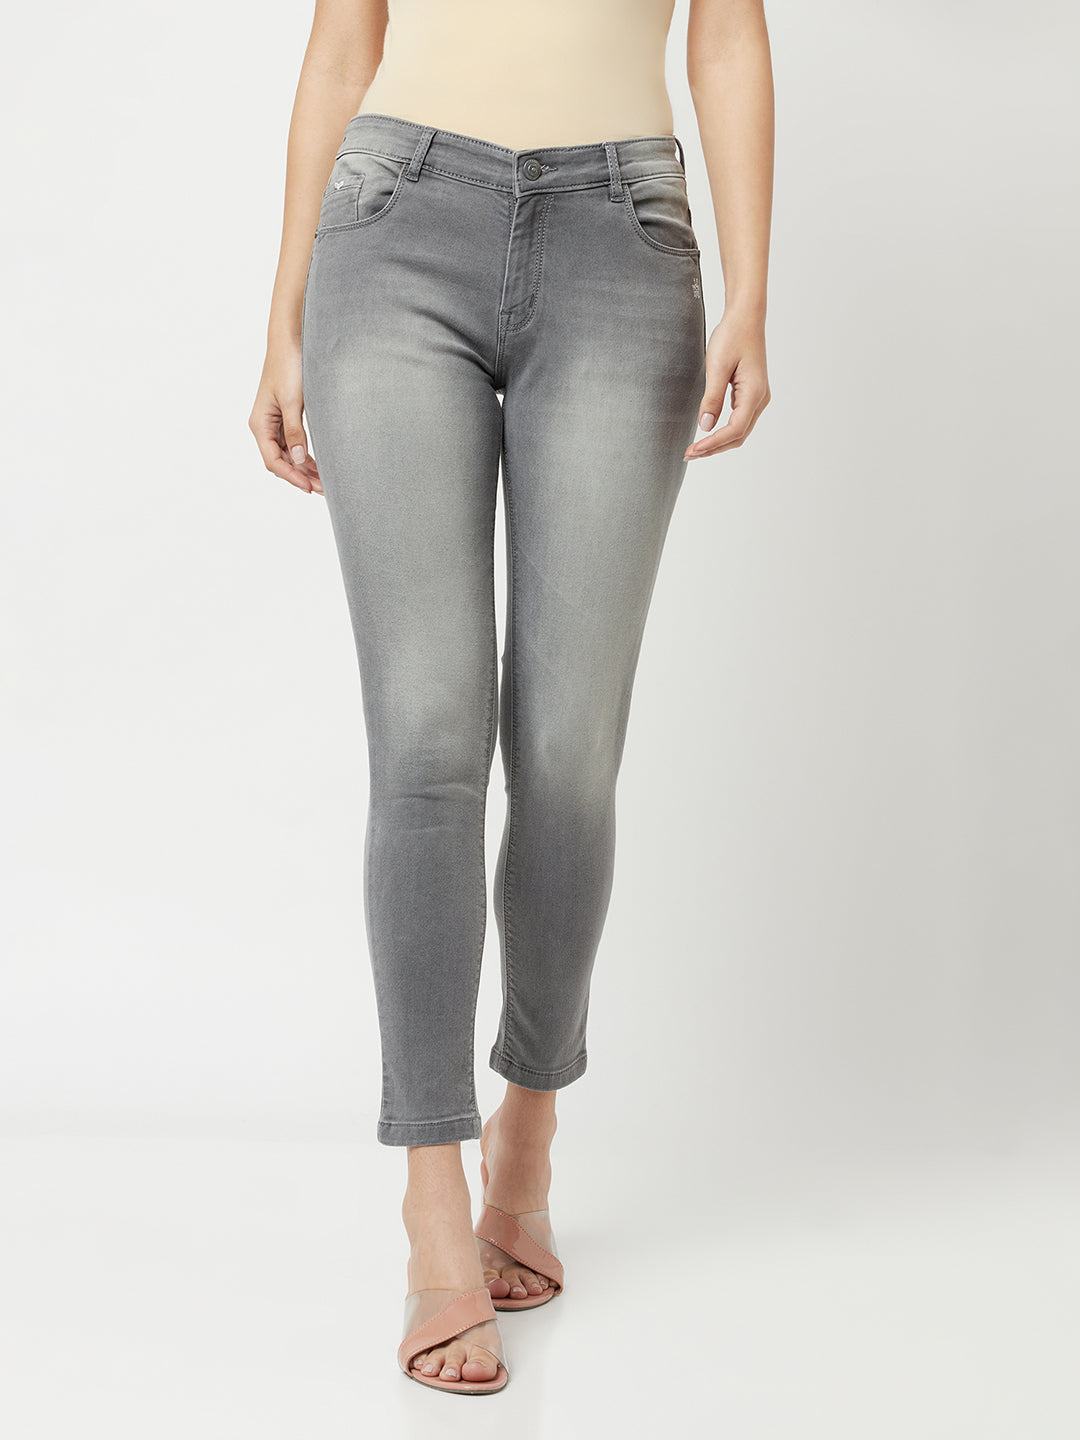 Light Grey Faded Jeans-Women Jeans-Crimsoune Club